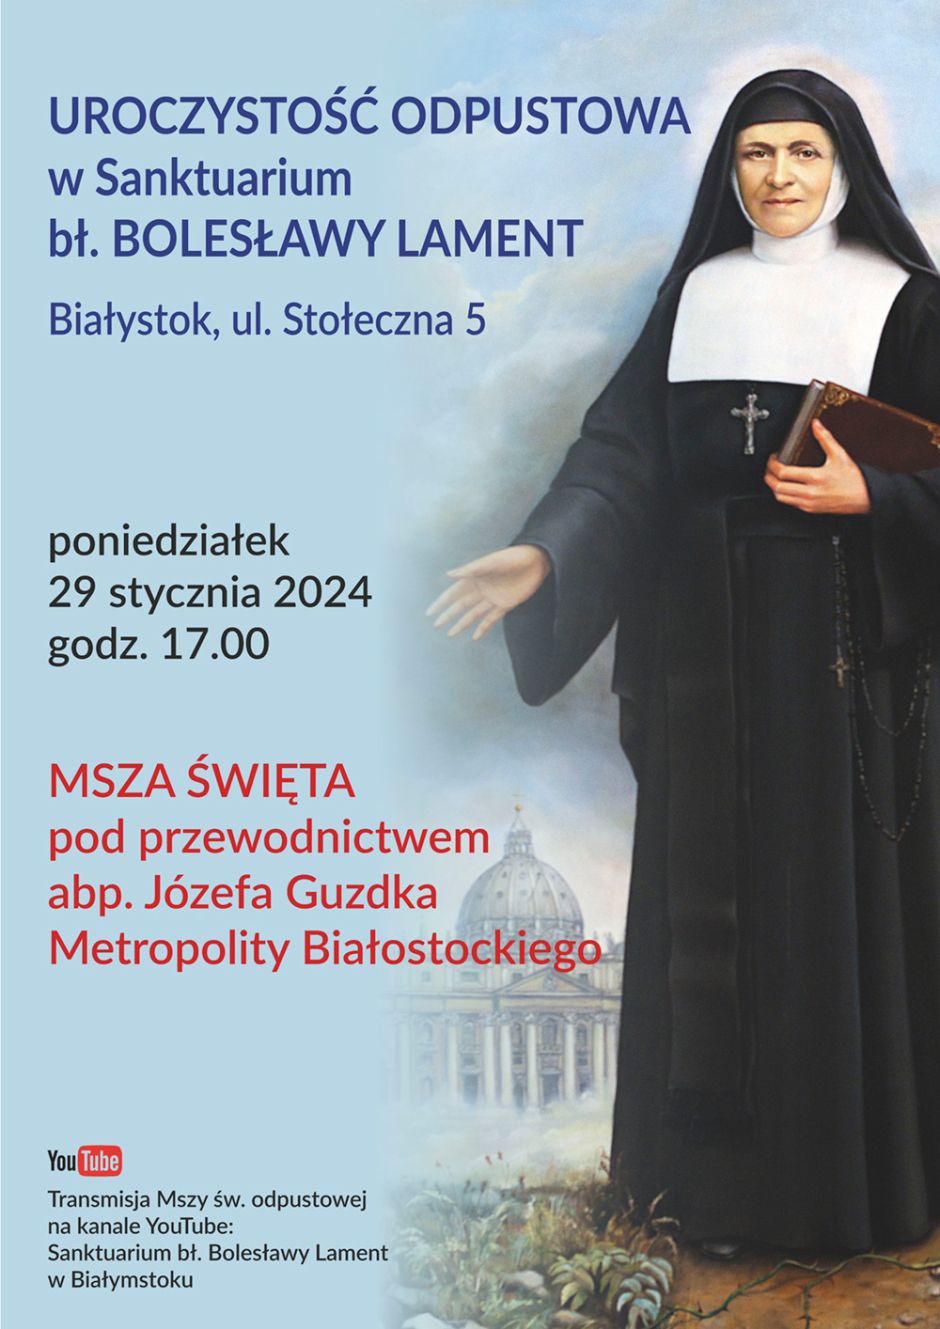 Uroczystość odpustowa w Sanktuarium bł. Bolesławy Lament